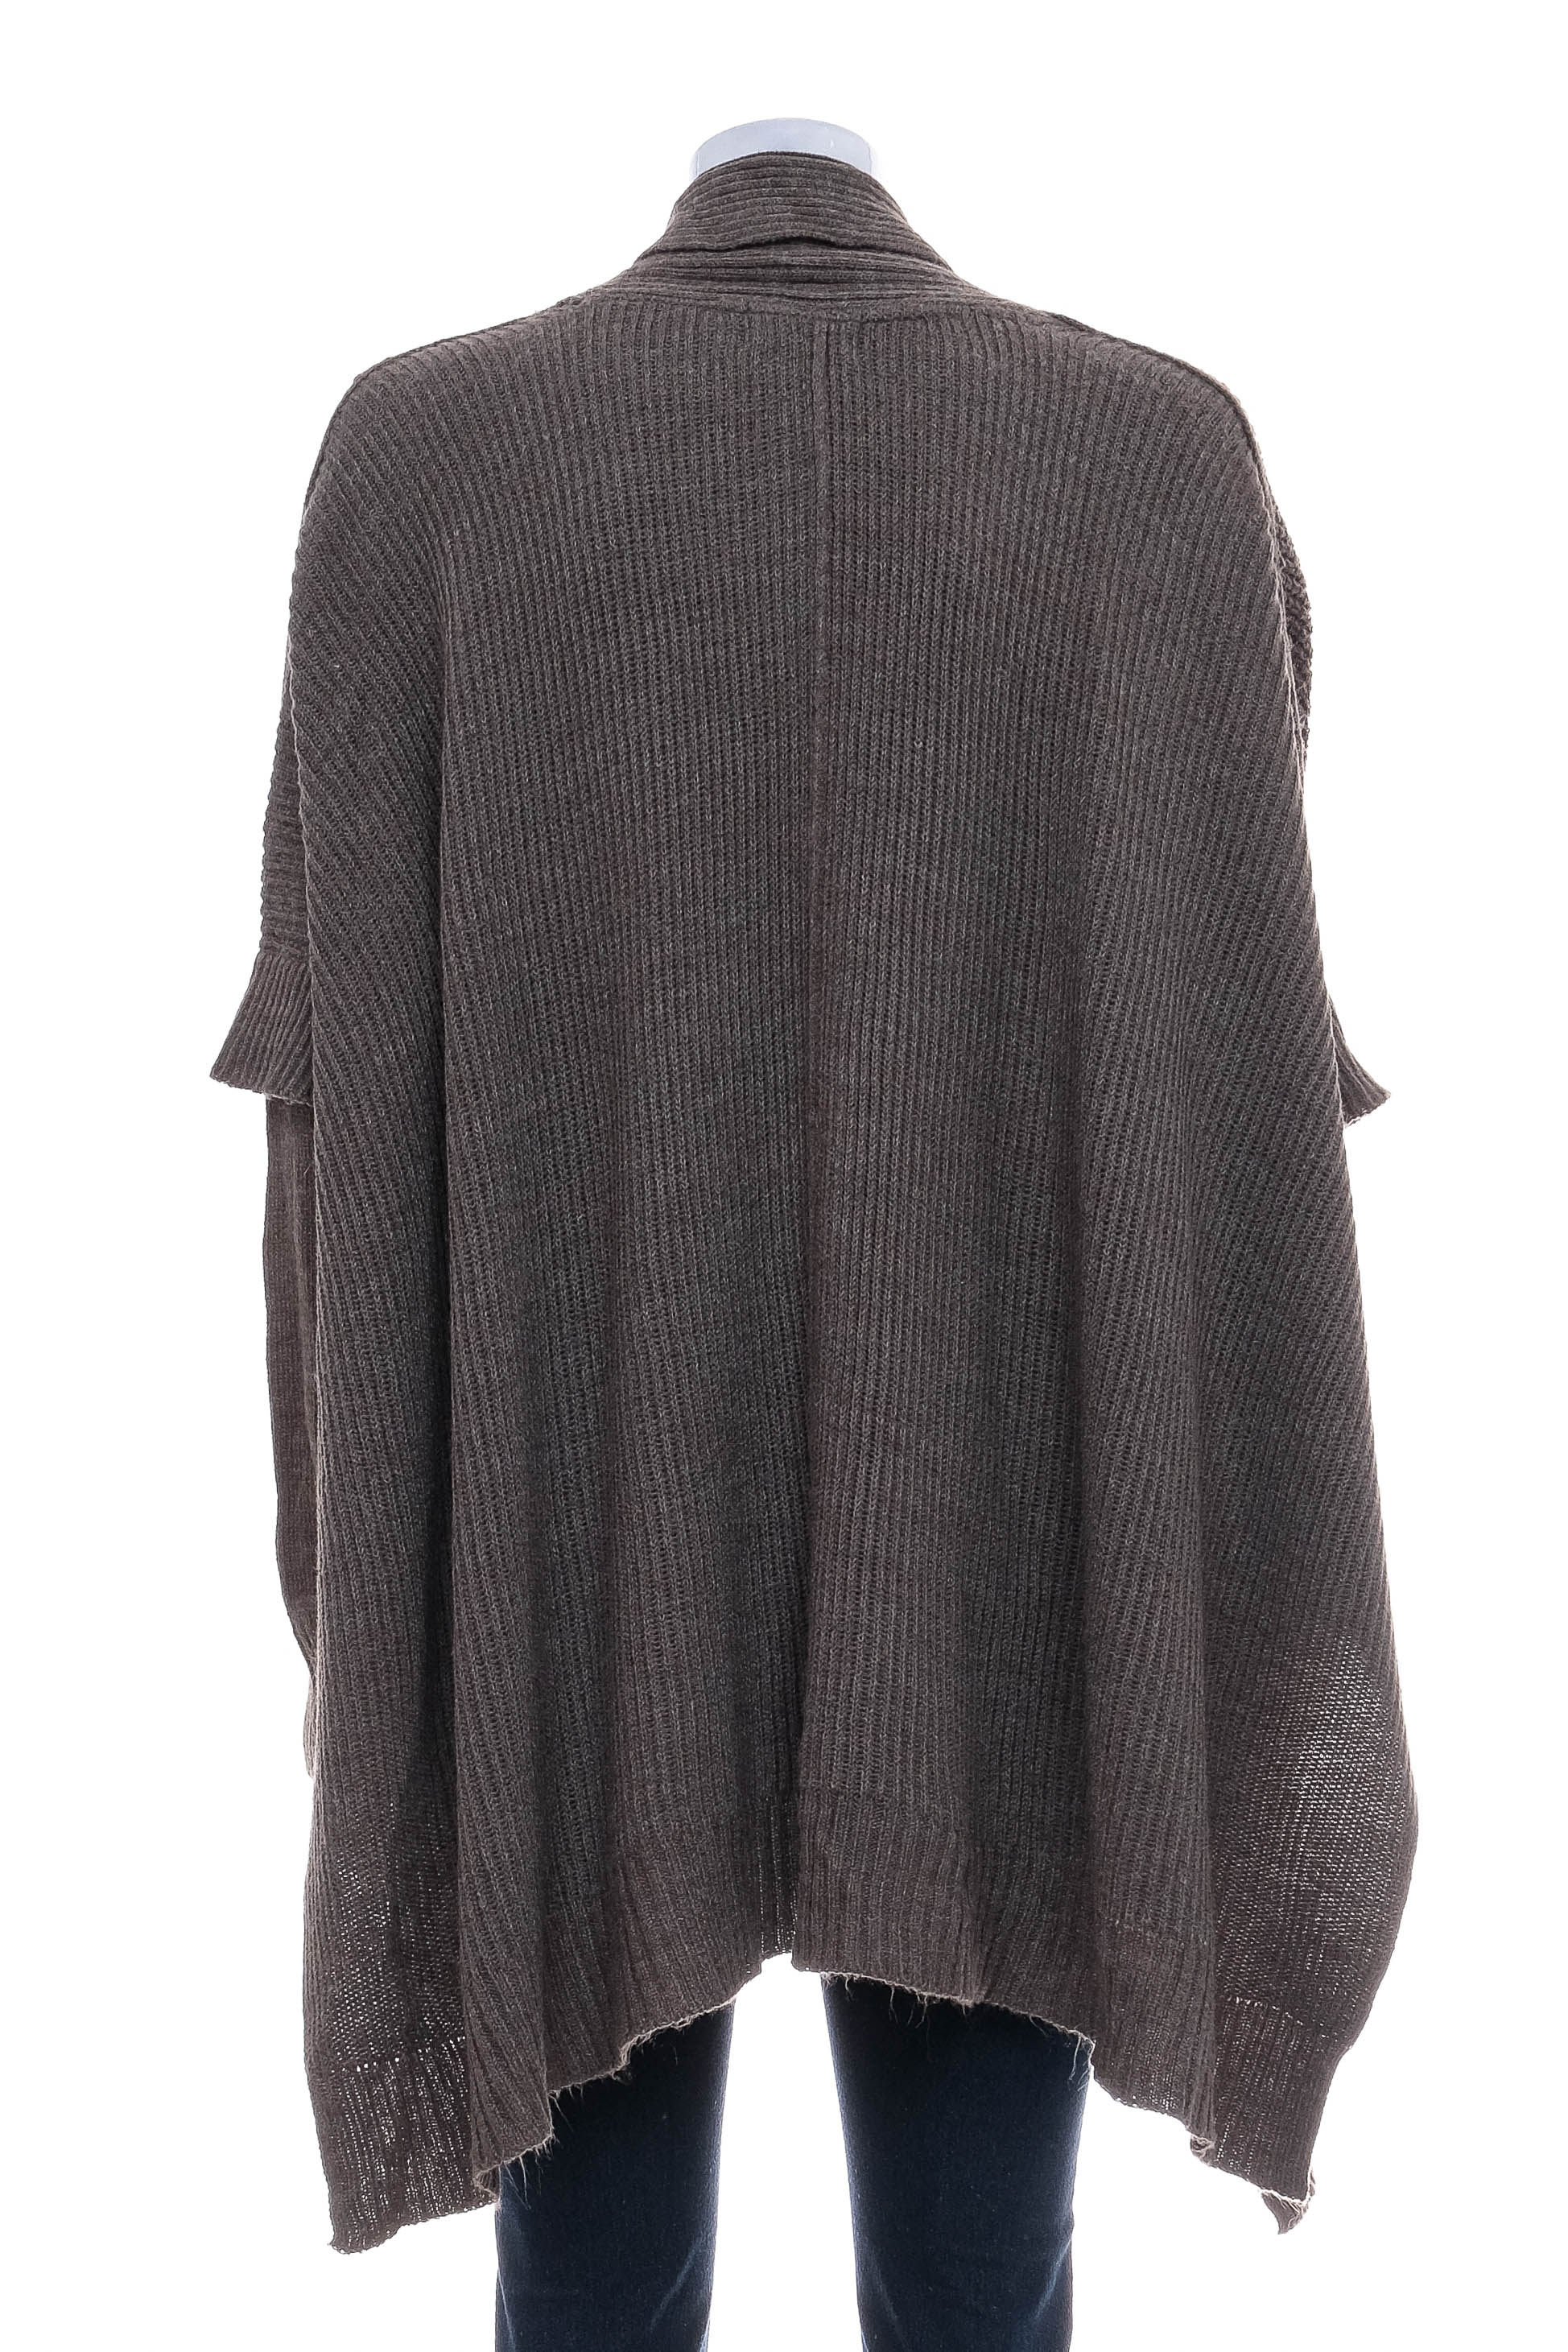 Women's sweater - Retrod - 1